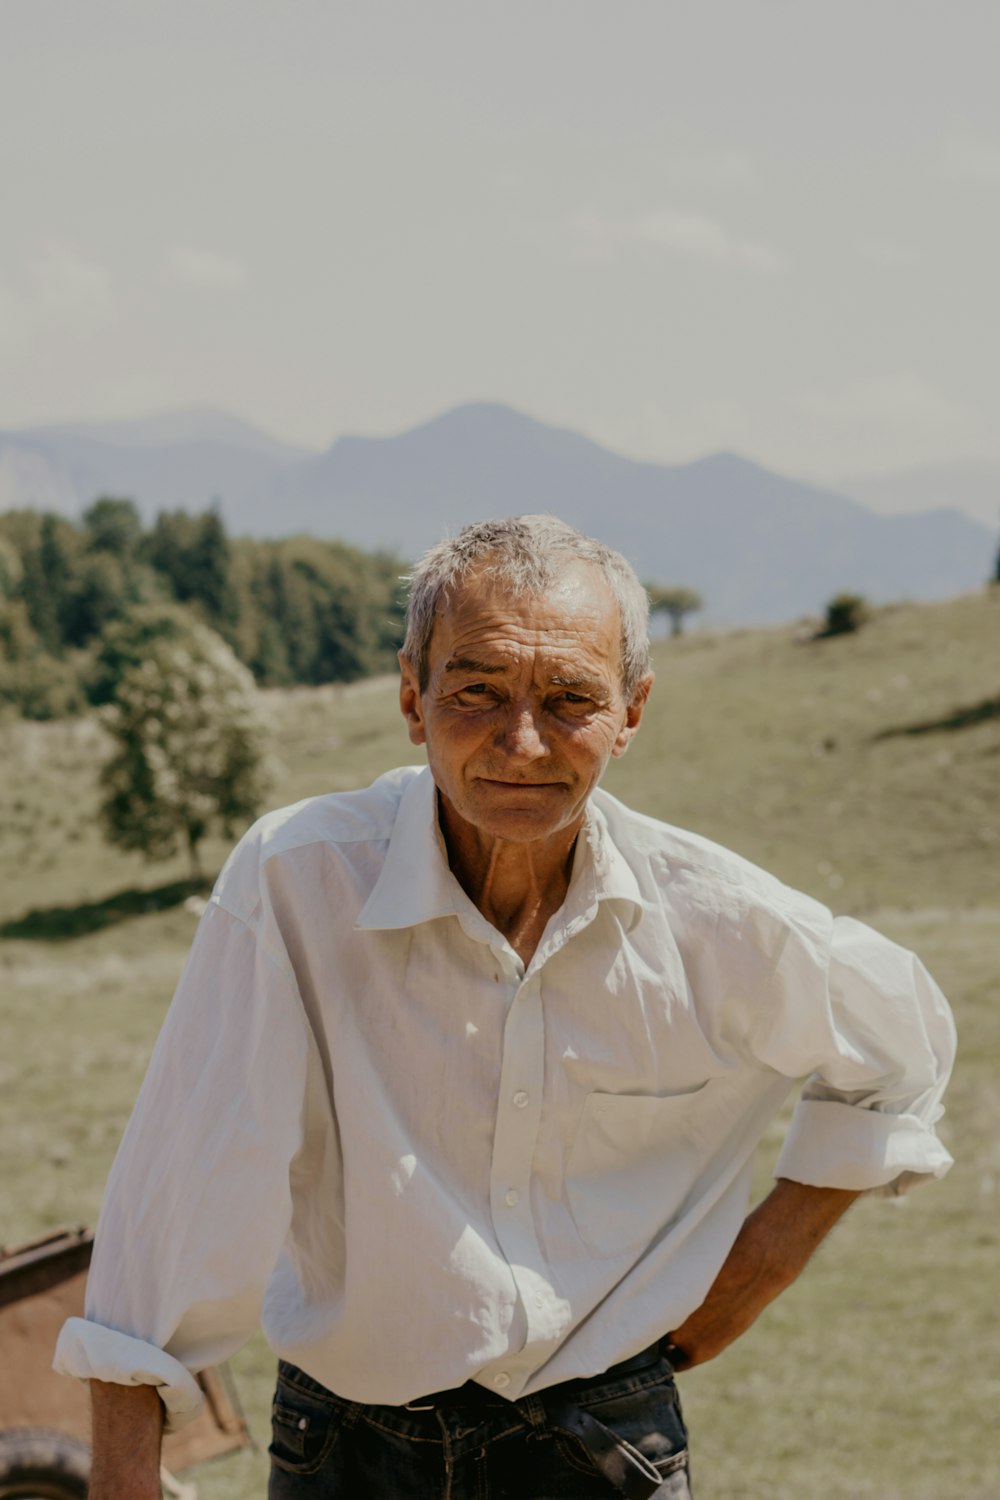 homme en chemise blanche boutonnée debout sur un champ brun pendant la journée